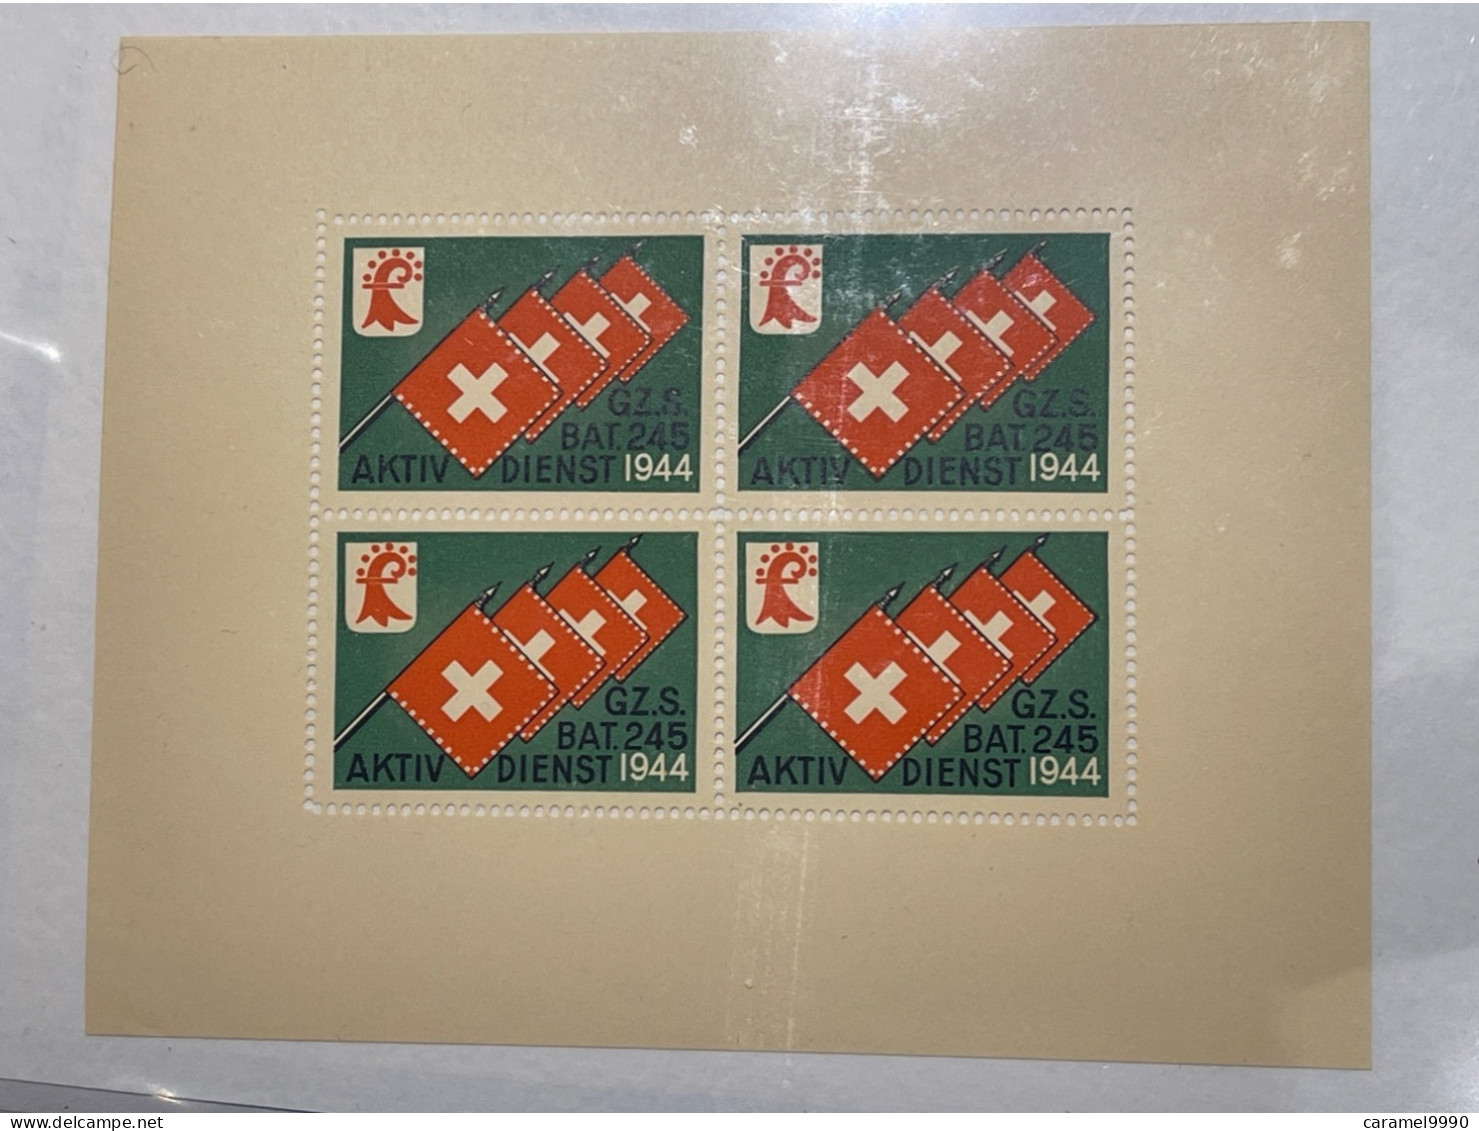 Schweiz Swiss Soldatenmarken 1944 Aktivdienst Grenzdienst GZ. S. BAT. 245  Z 27 - Etichette